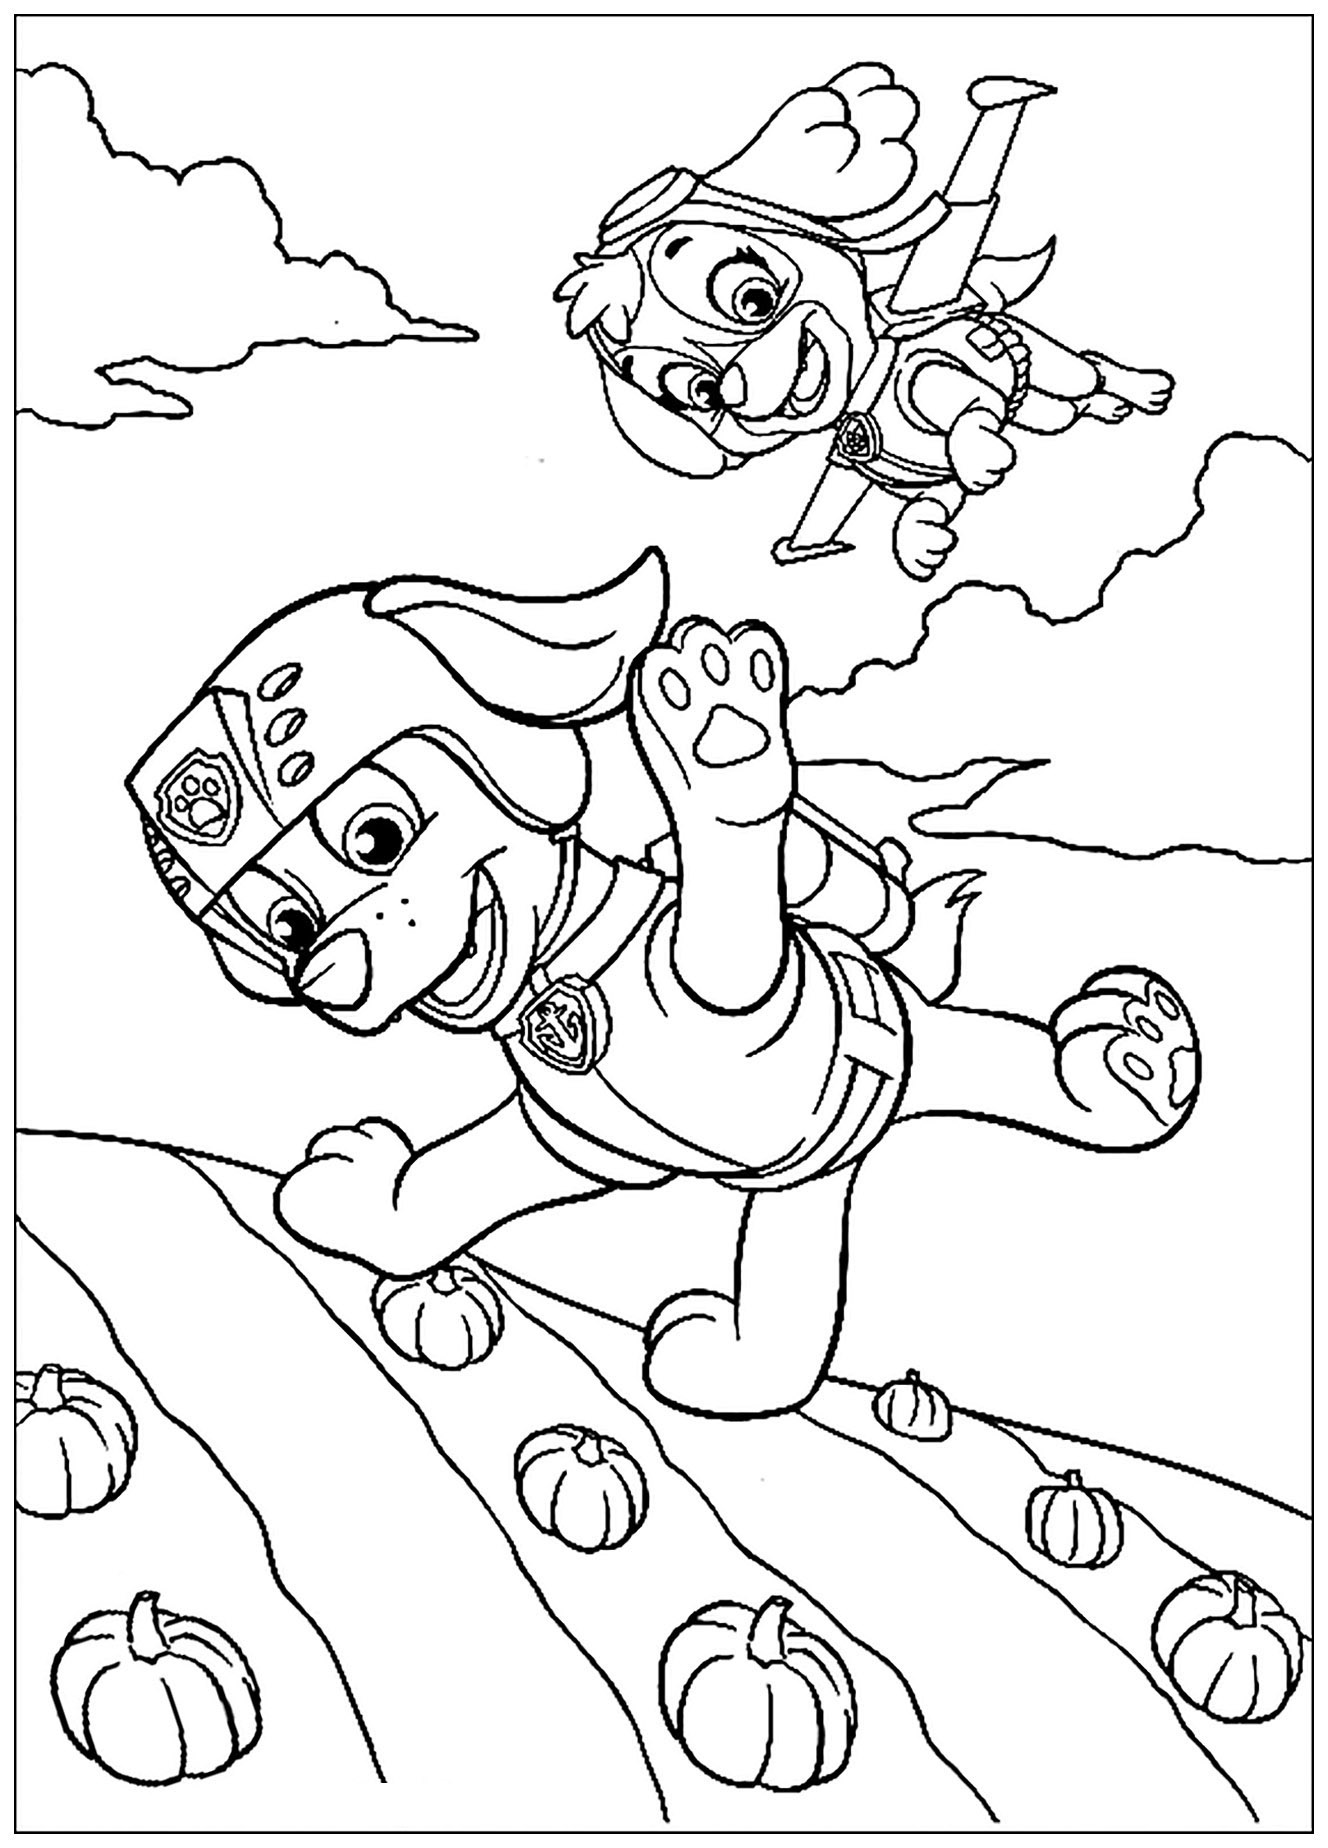 Preciosos dibujos para colorear de PAW Patrol, Patrulla de cachorros, sencillos, para niños : Paracaídas